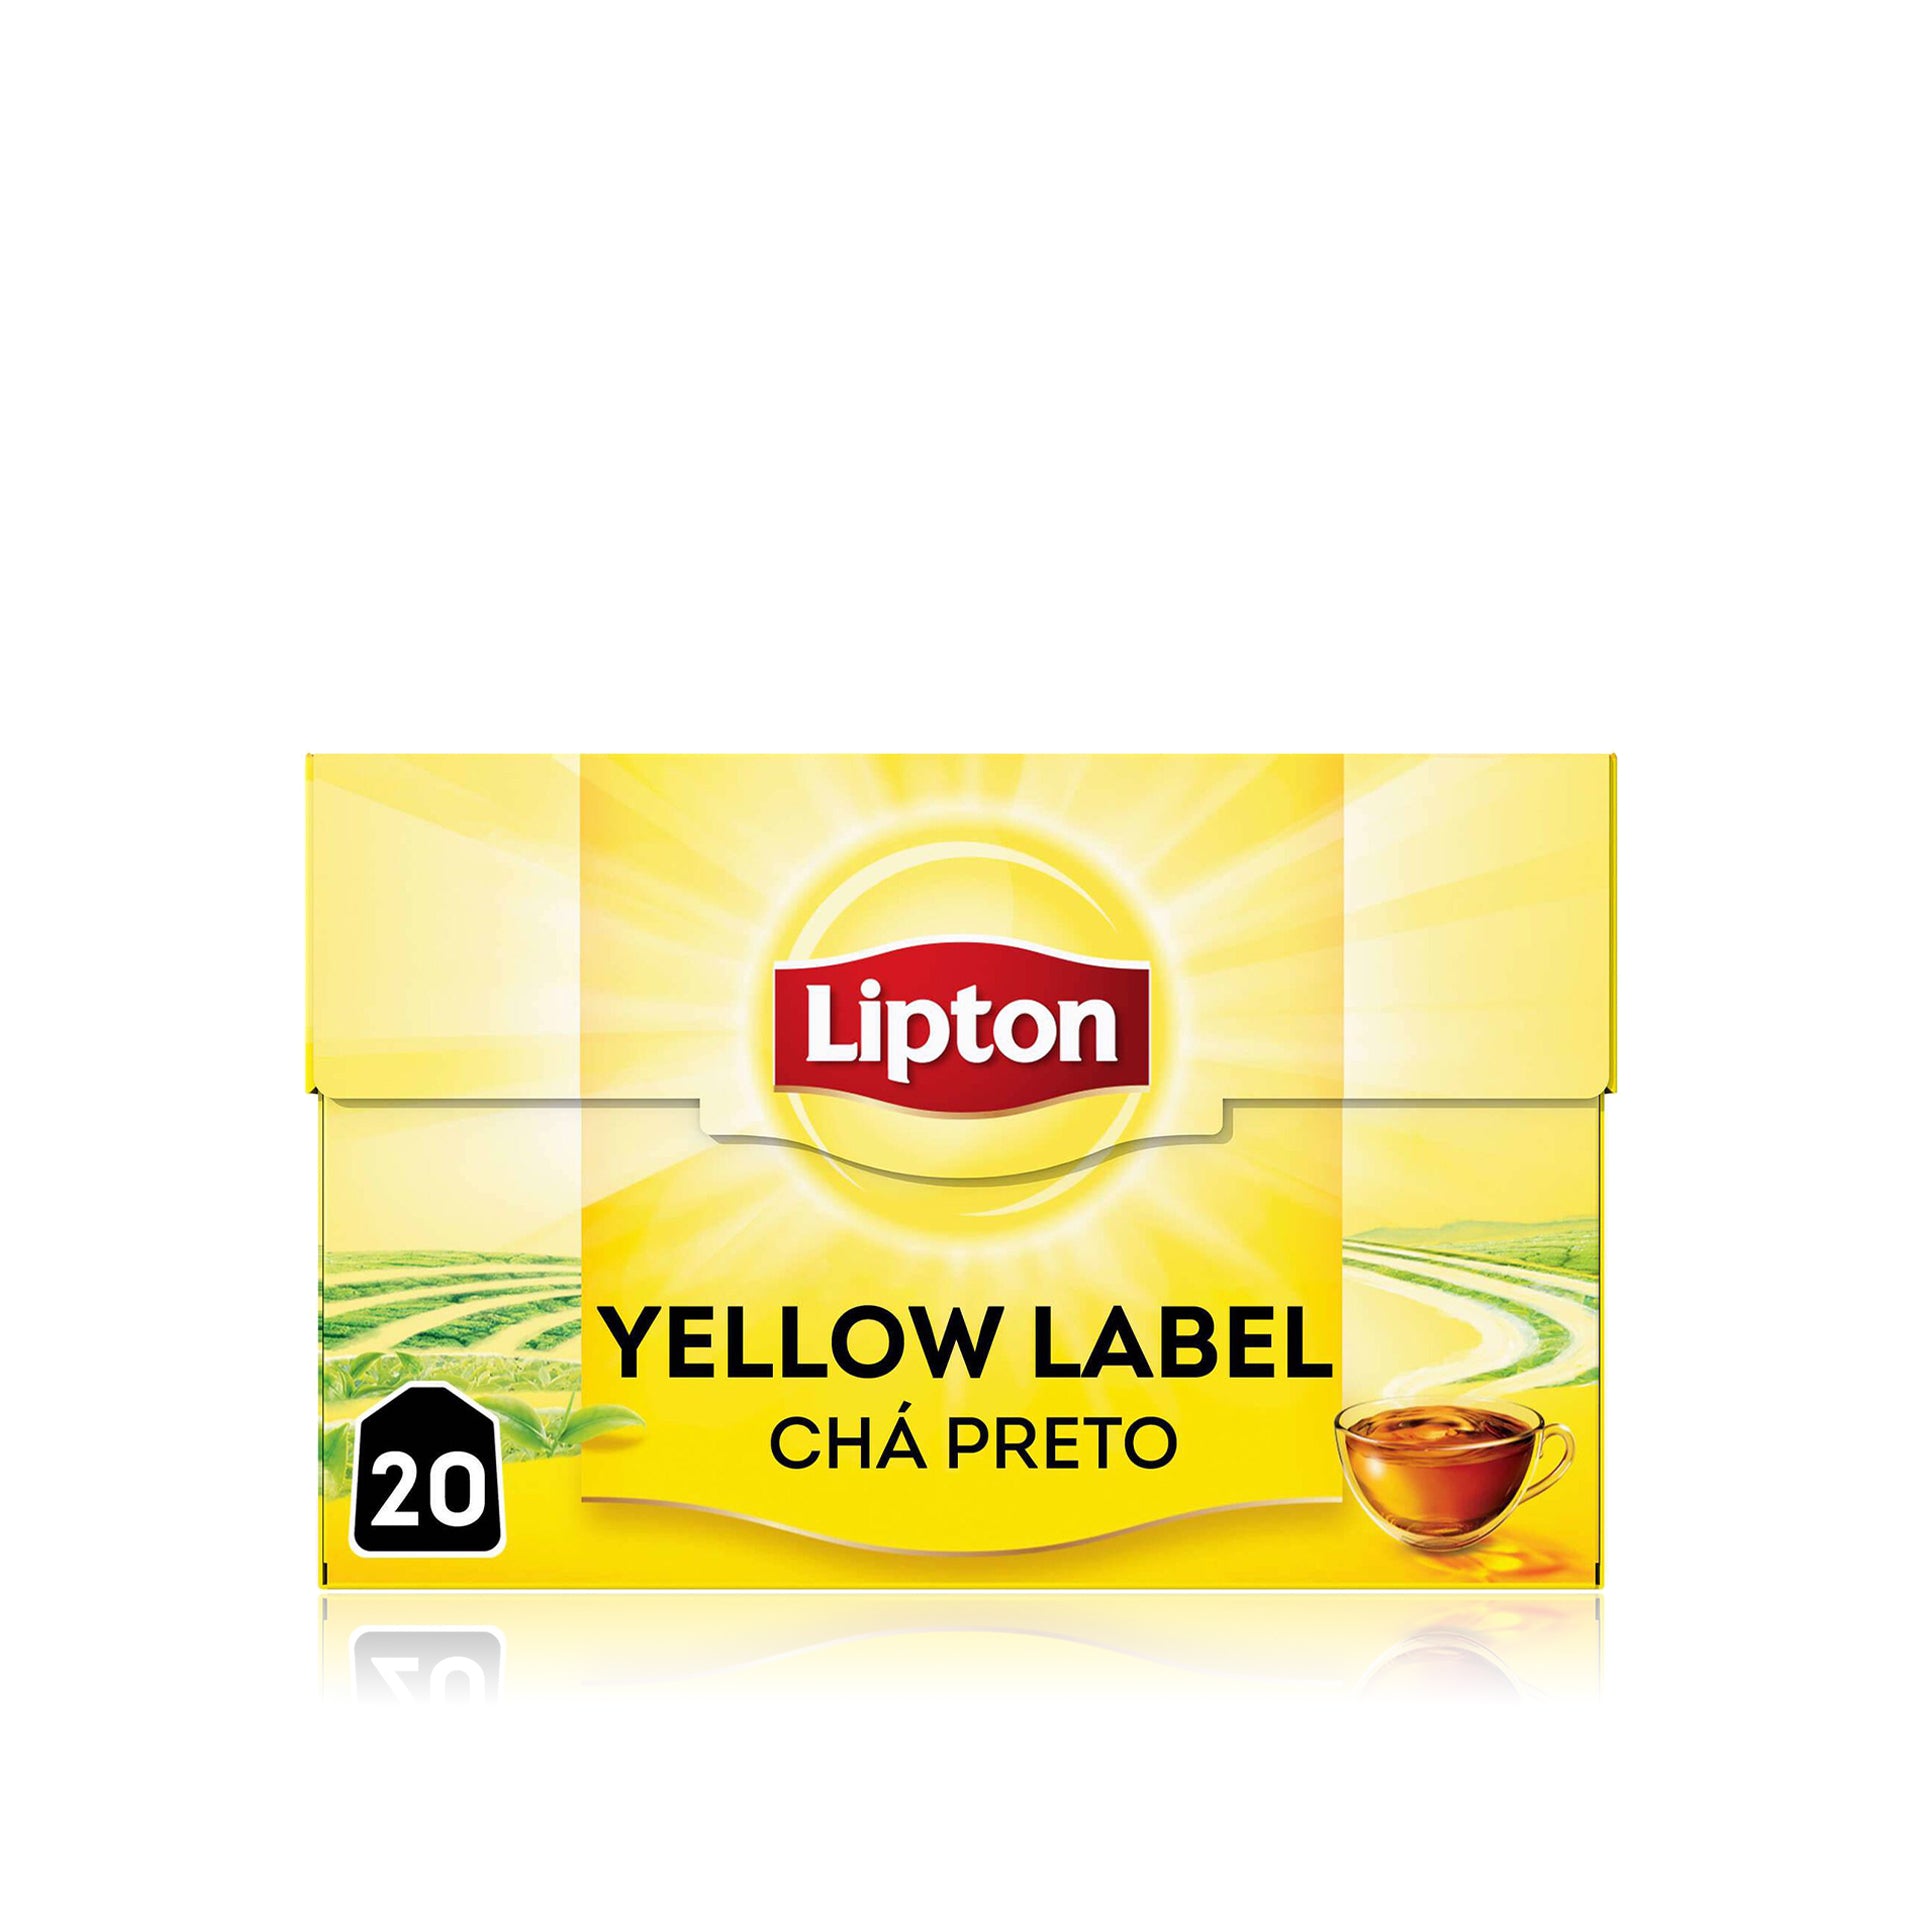 Lipton Chá Preto Yellow Label 20 un